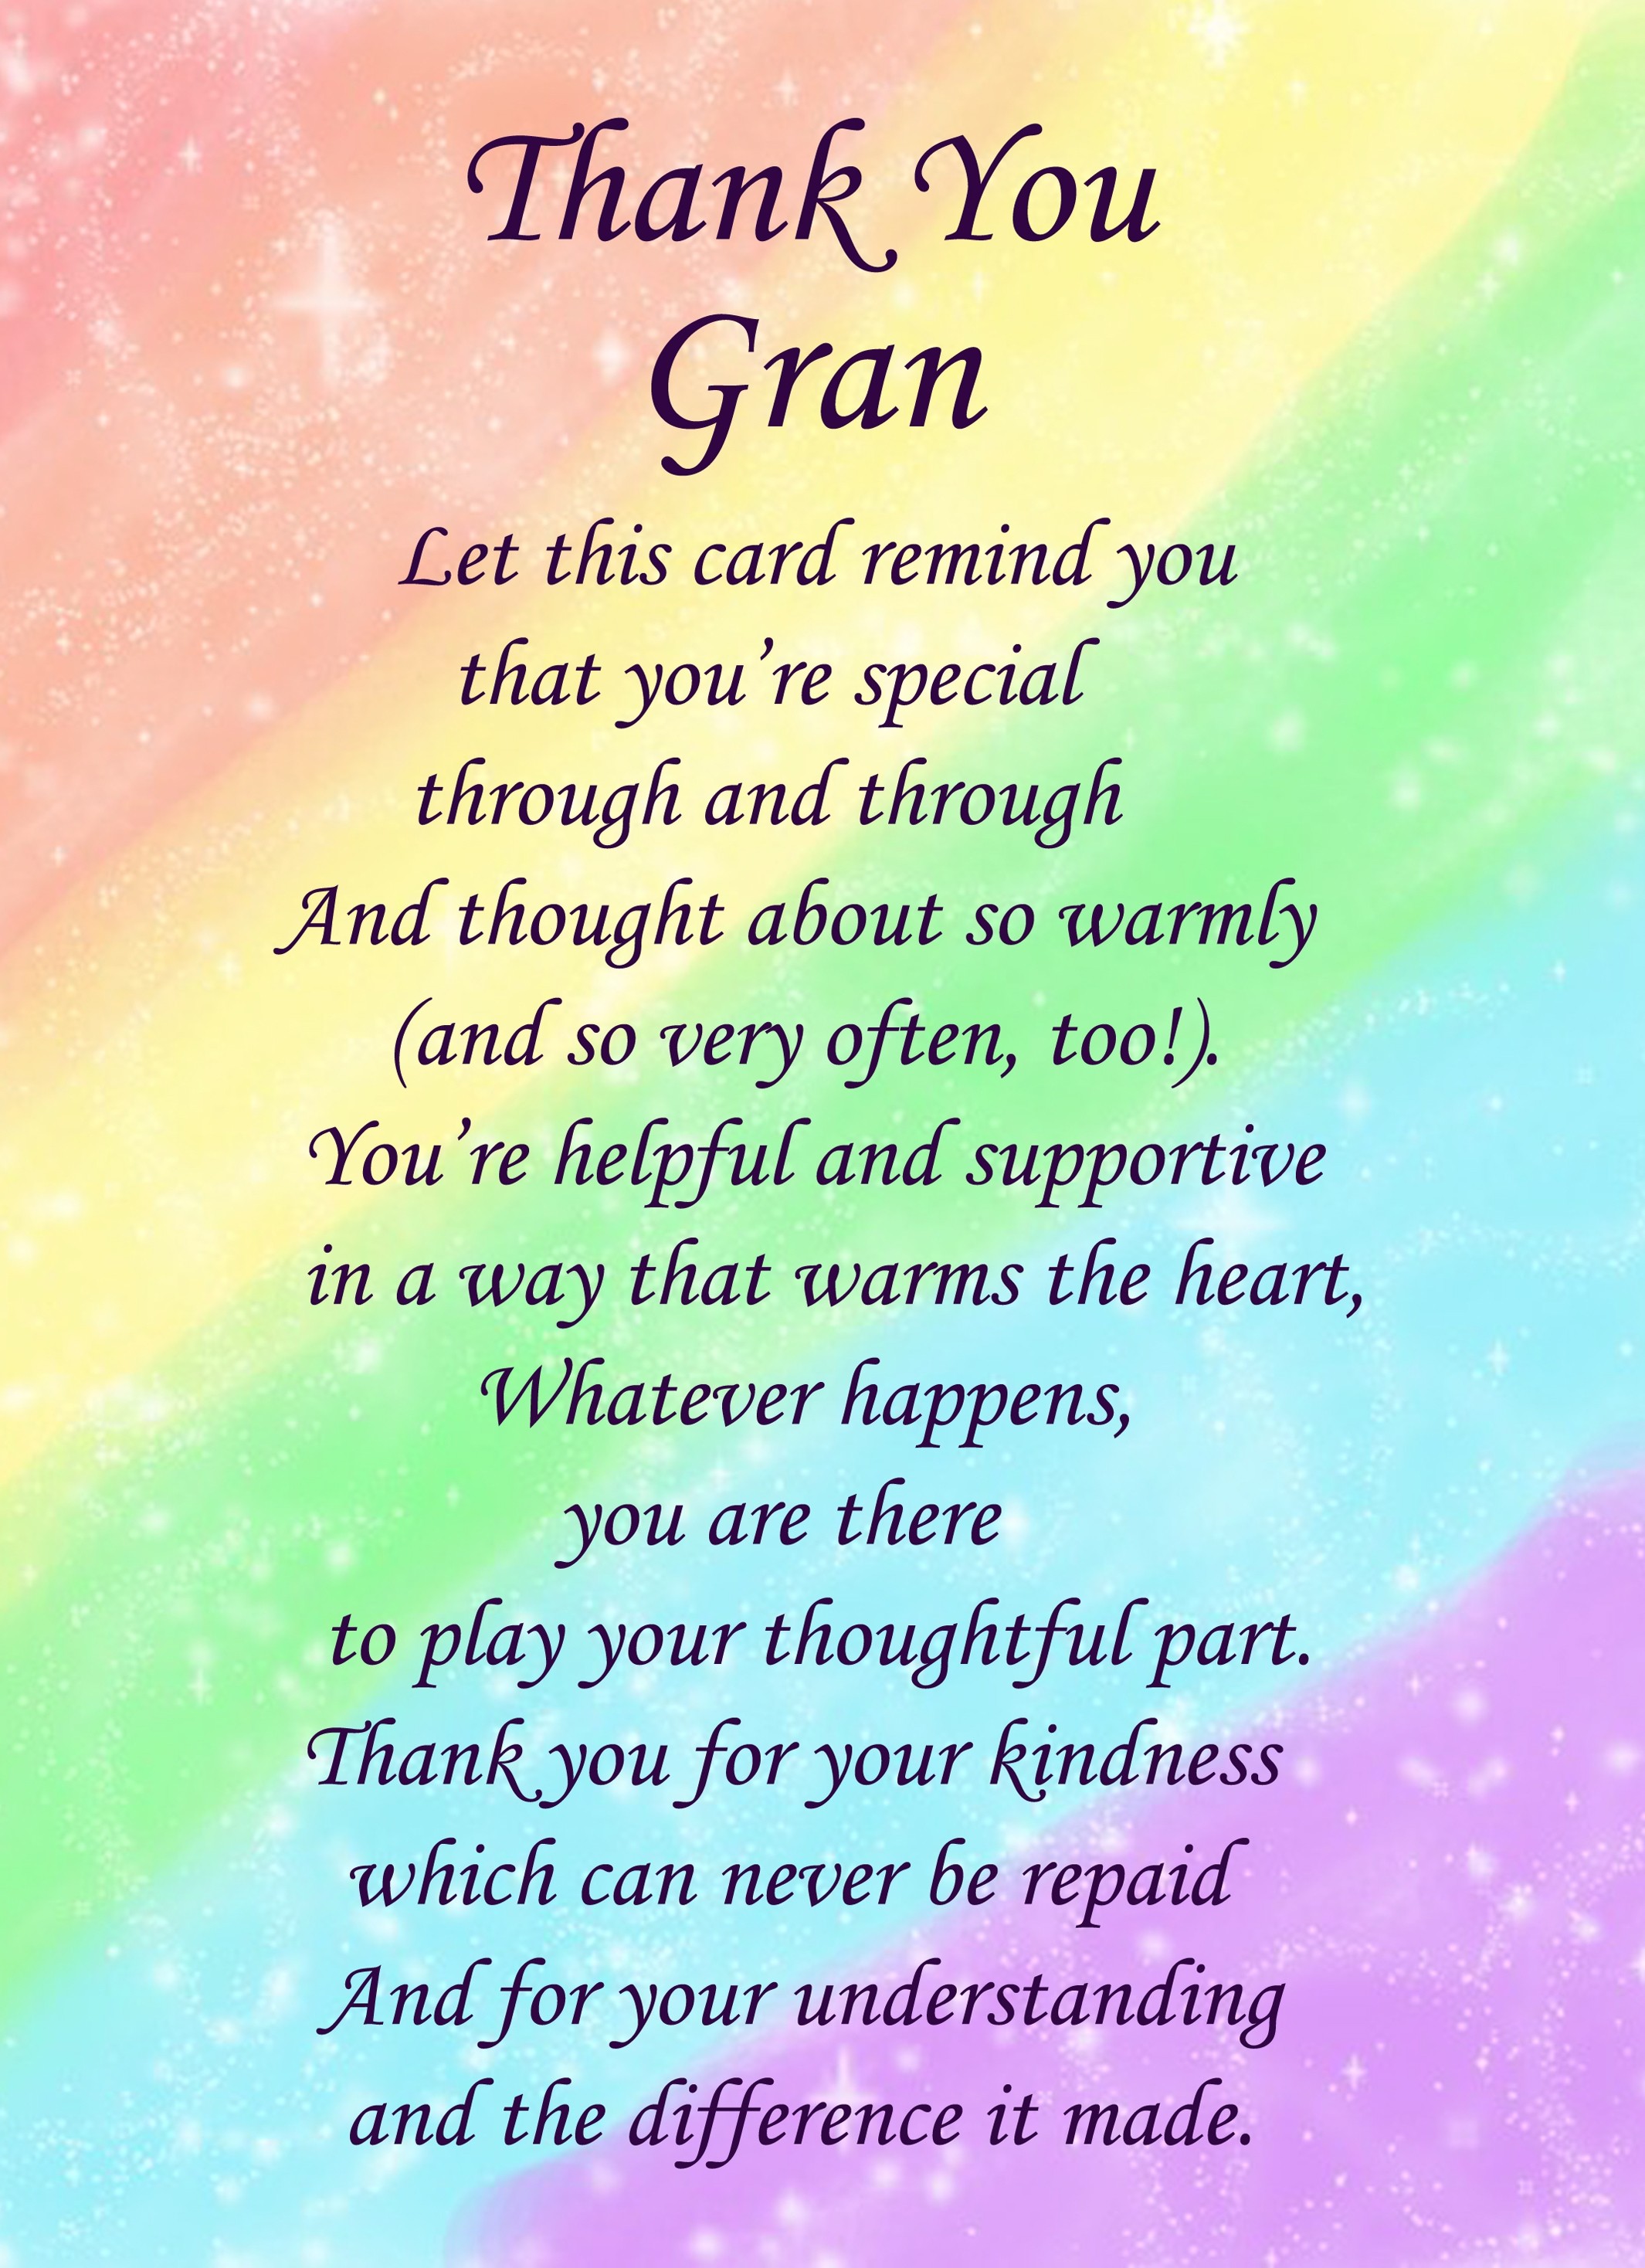 Thank You Gran Poem Verse Greeting Card